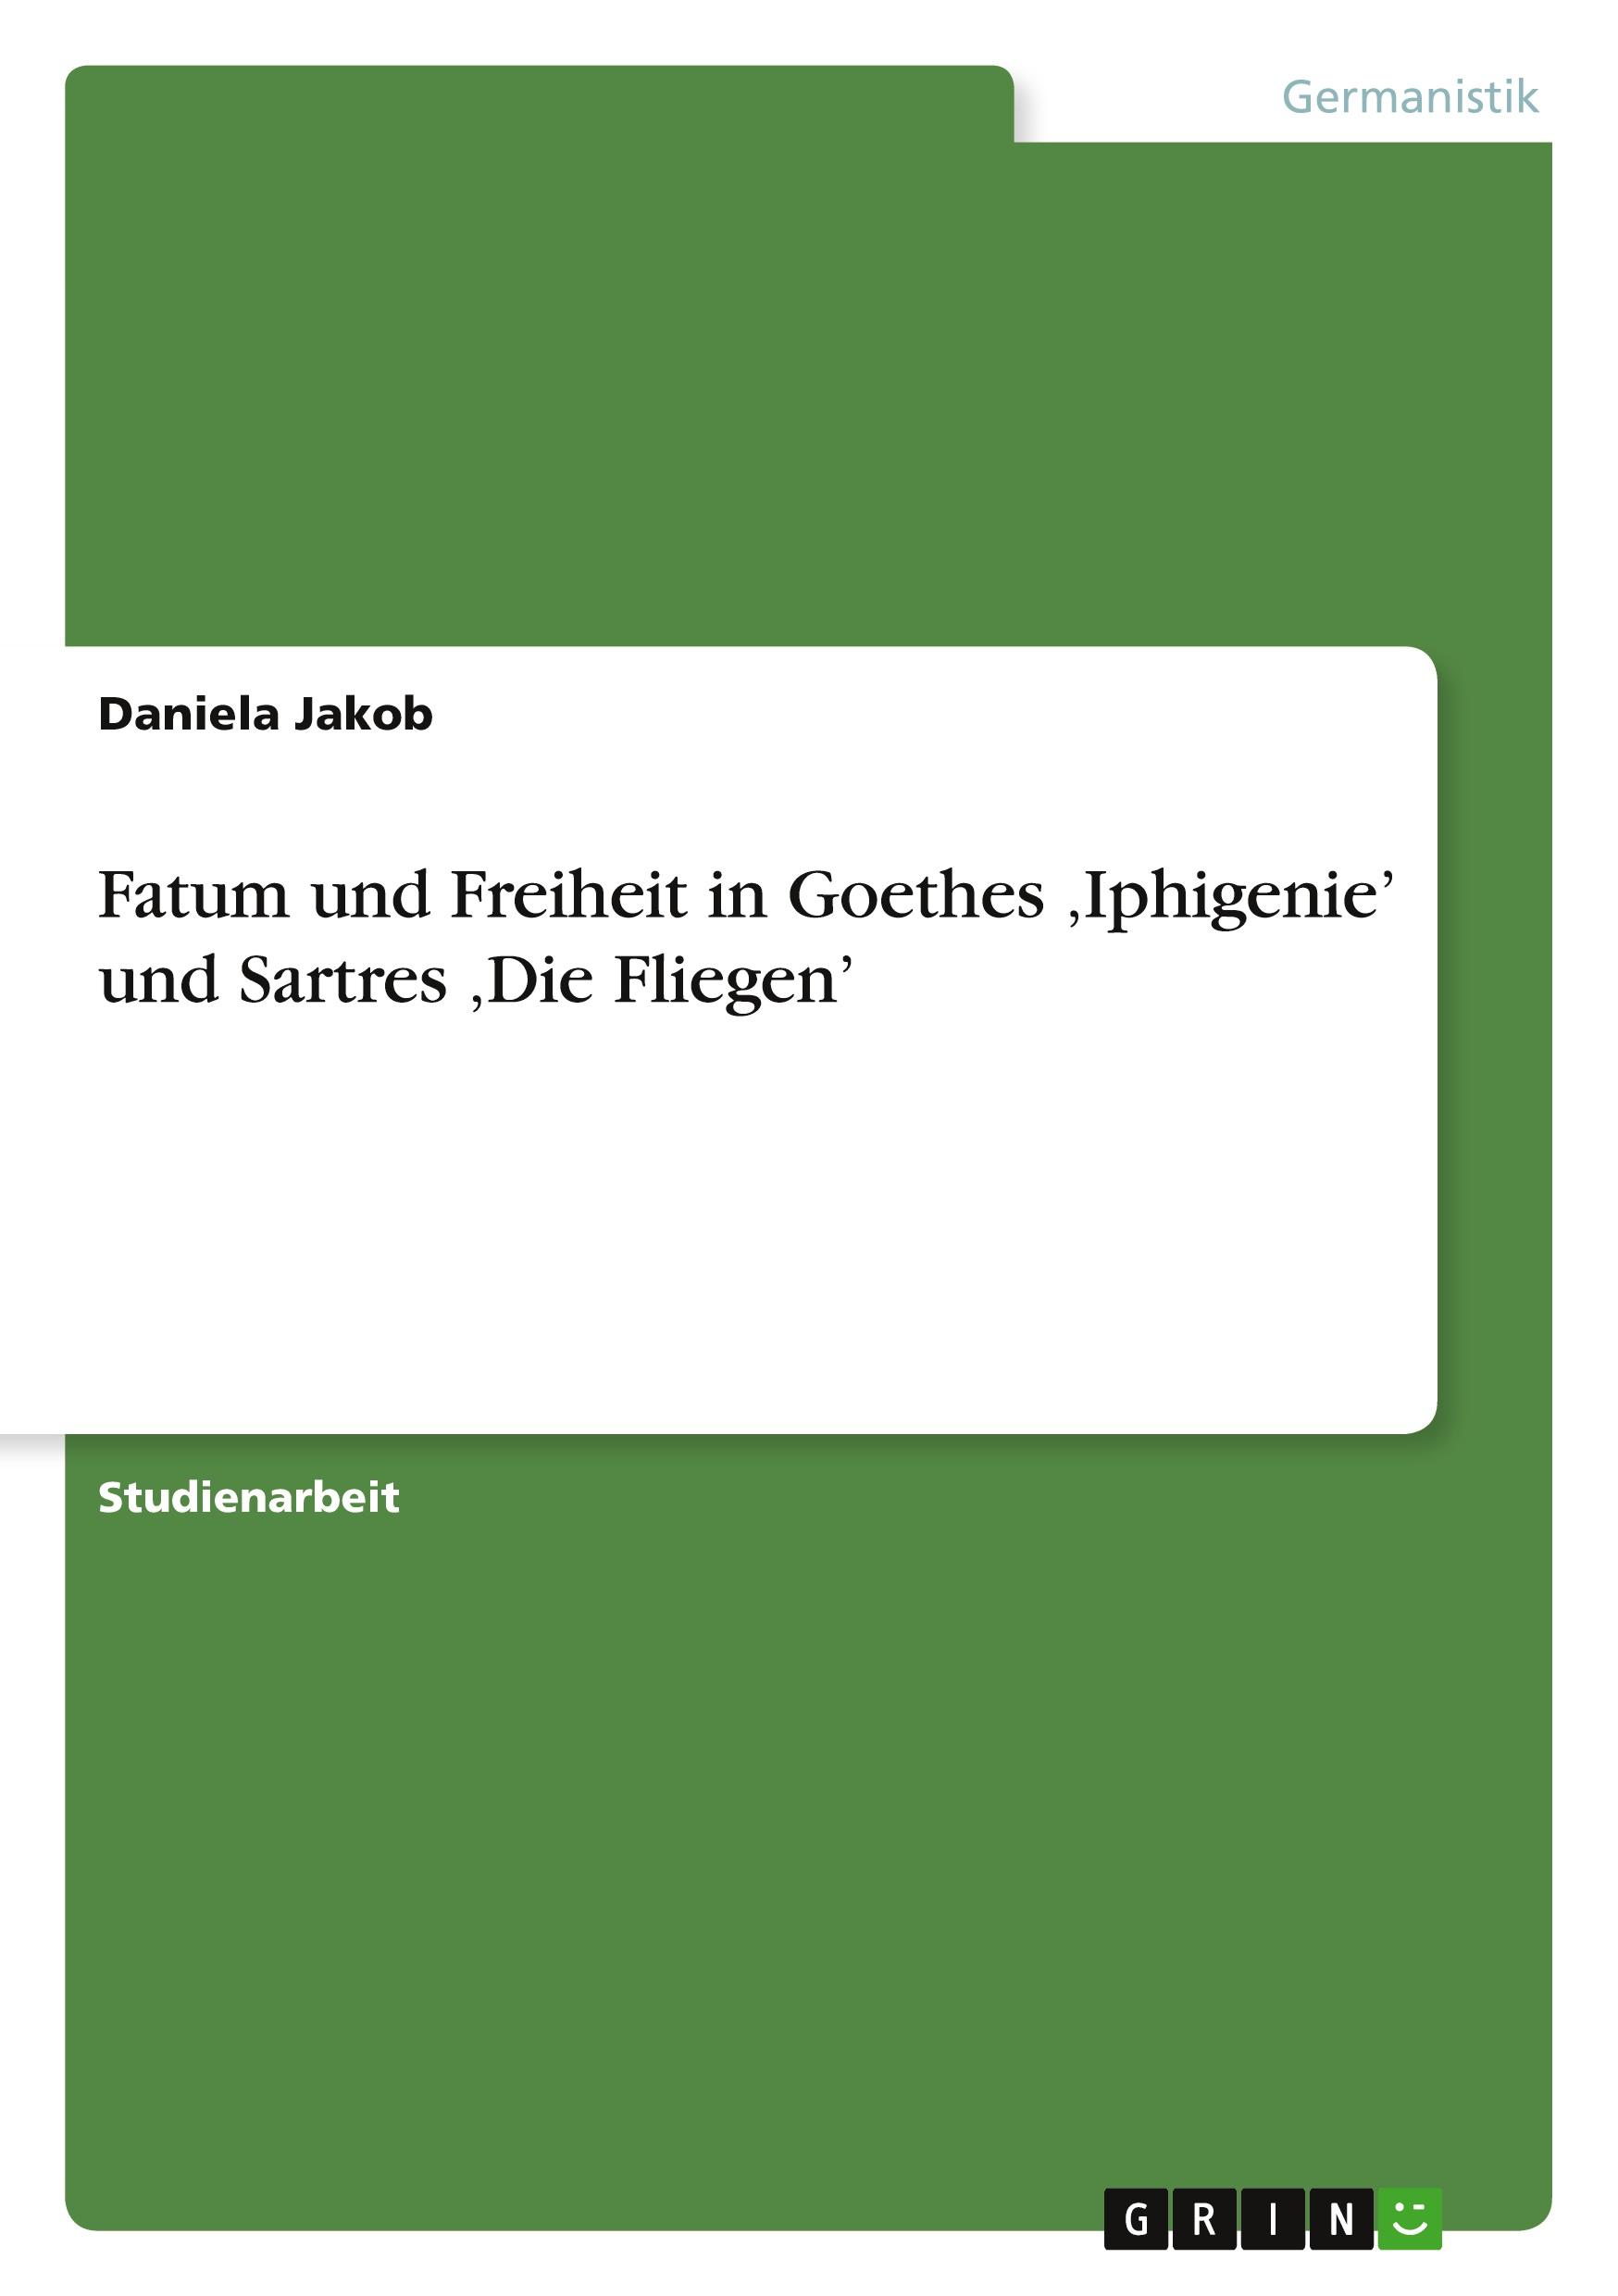 Fatum und Freiheit in Goethes ¿Iphigenie¿ und Sartres ¿Die Fliegen¿ / Daniela Jakob / Taschenbuch / Paperback / 32 S. / Deutsch / 2011 / GRIN Verlag / EAN 9783656036845 - Jakob, Daniela